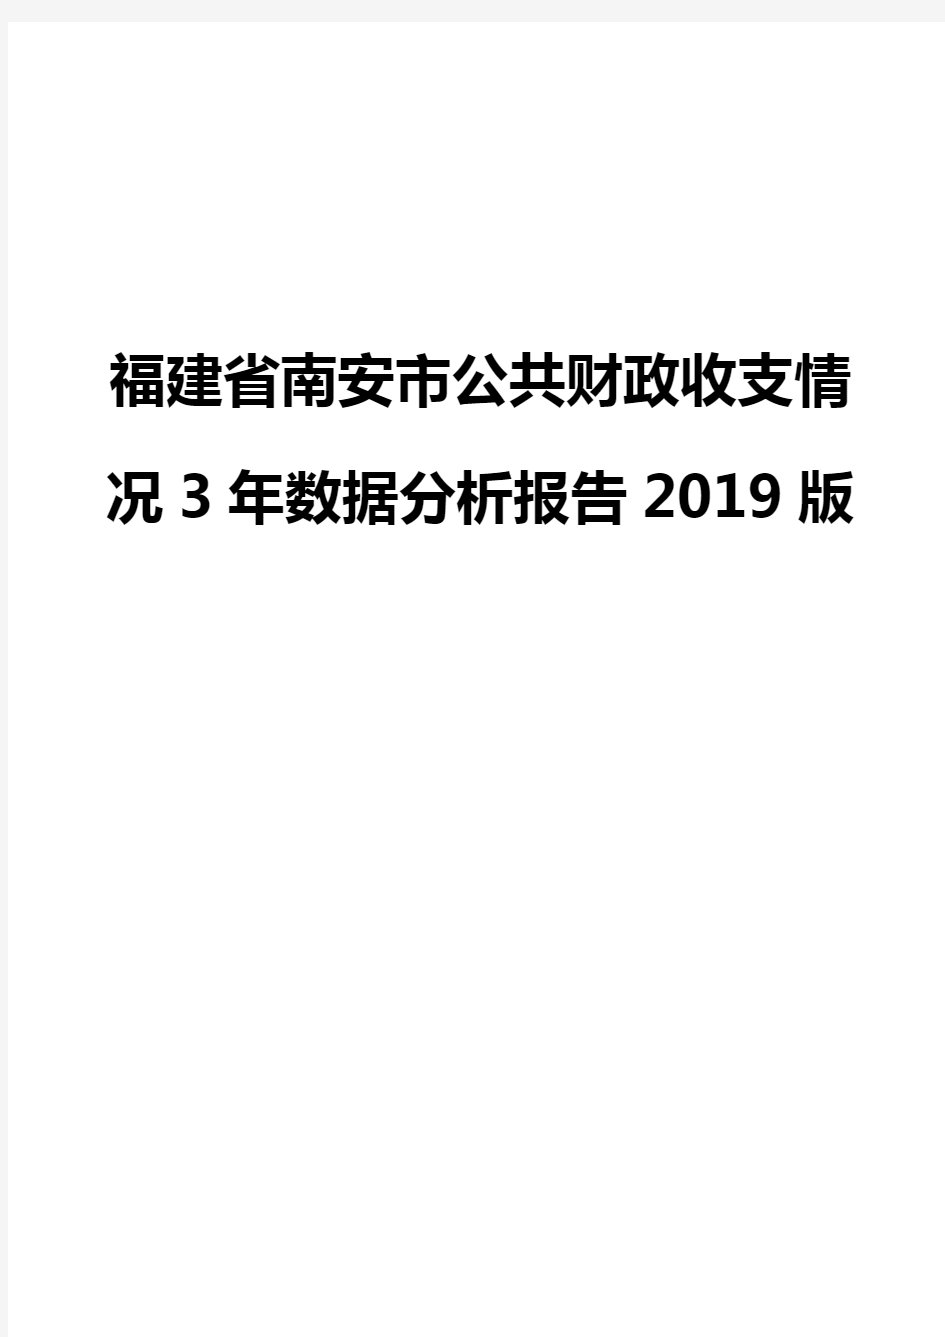 福建省南安市公共财政收支情况3年数据分析报告2019版